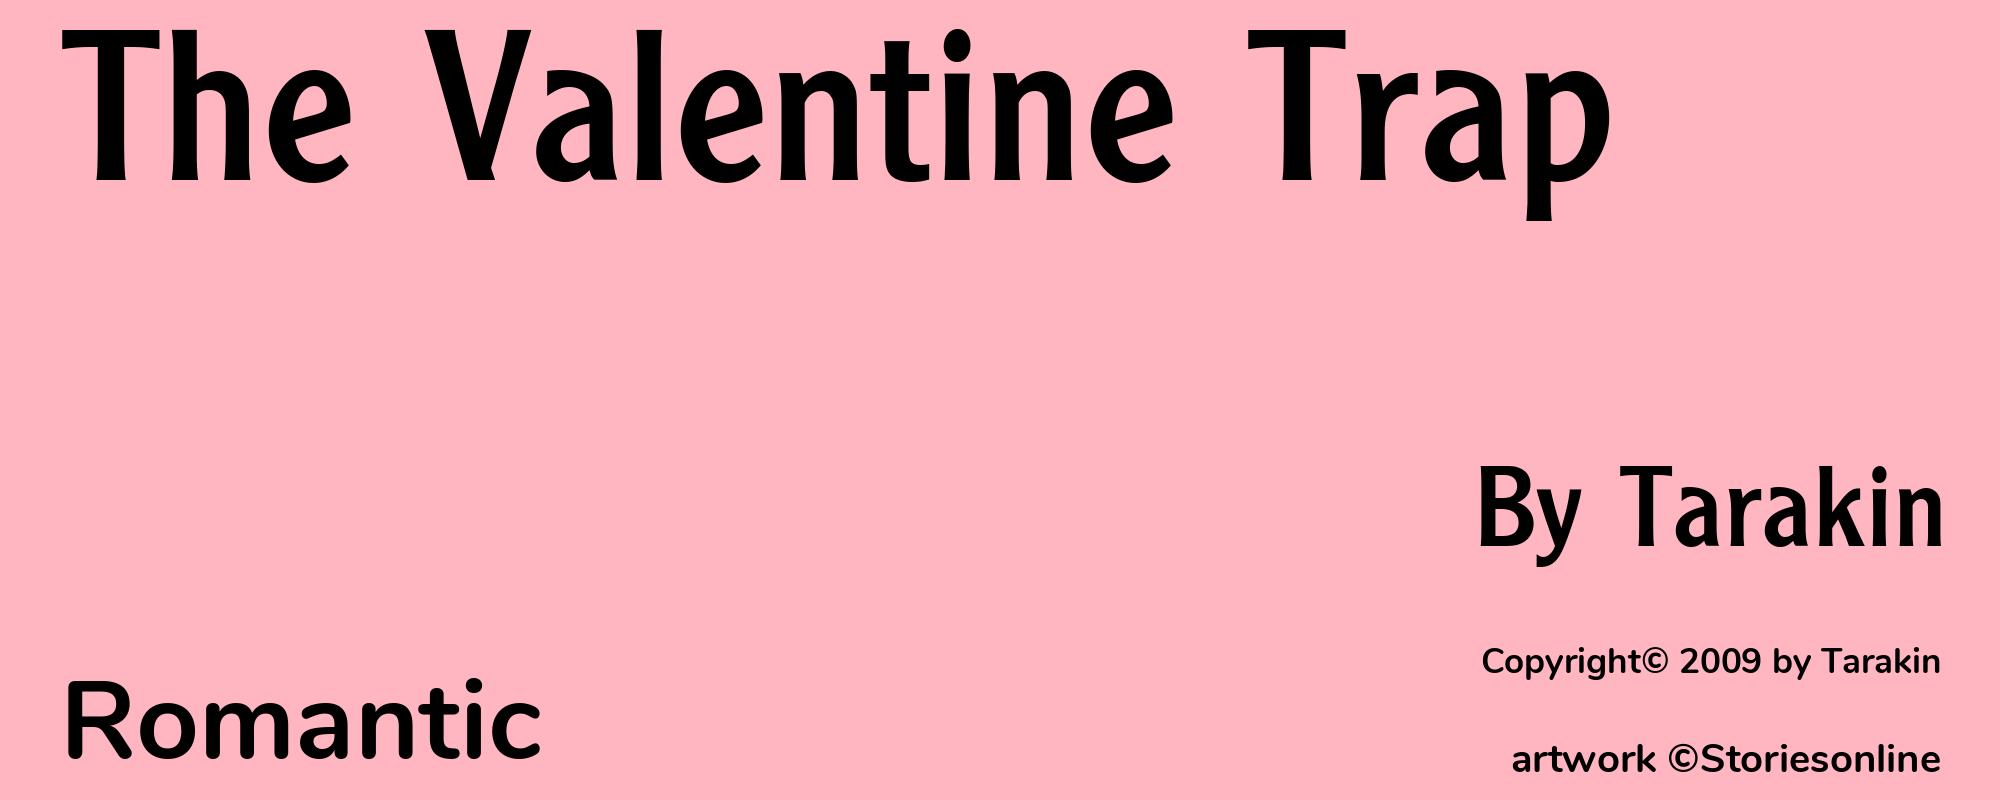 The Valentine Trap - Cover